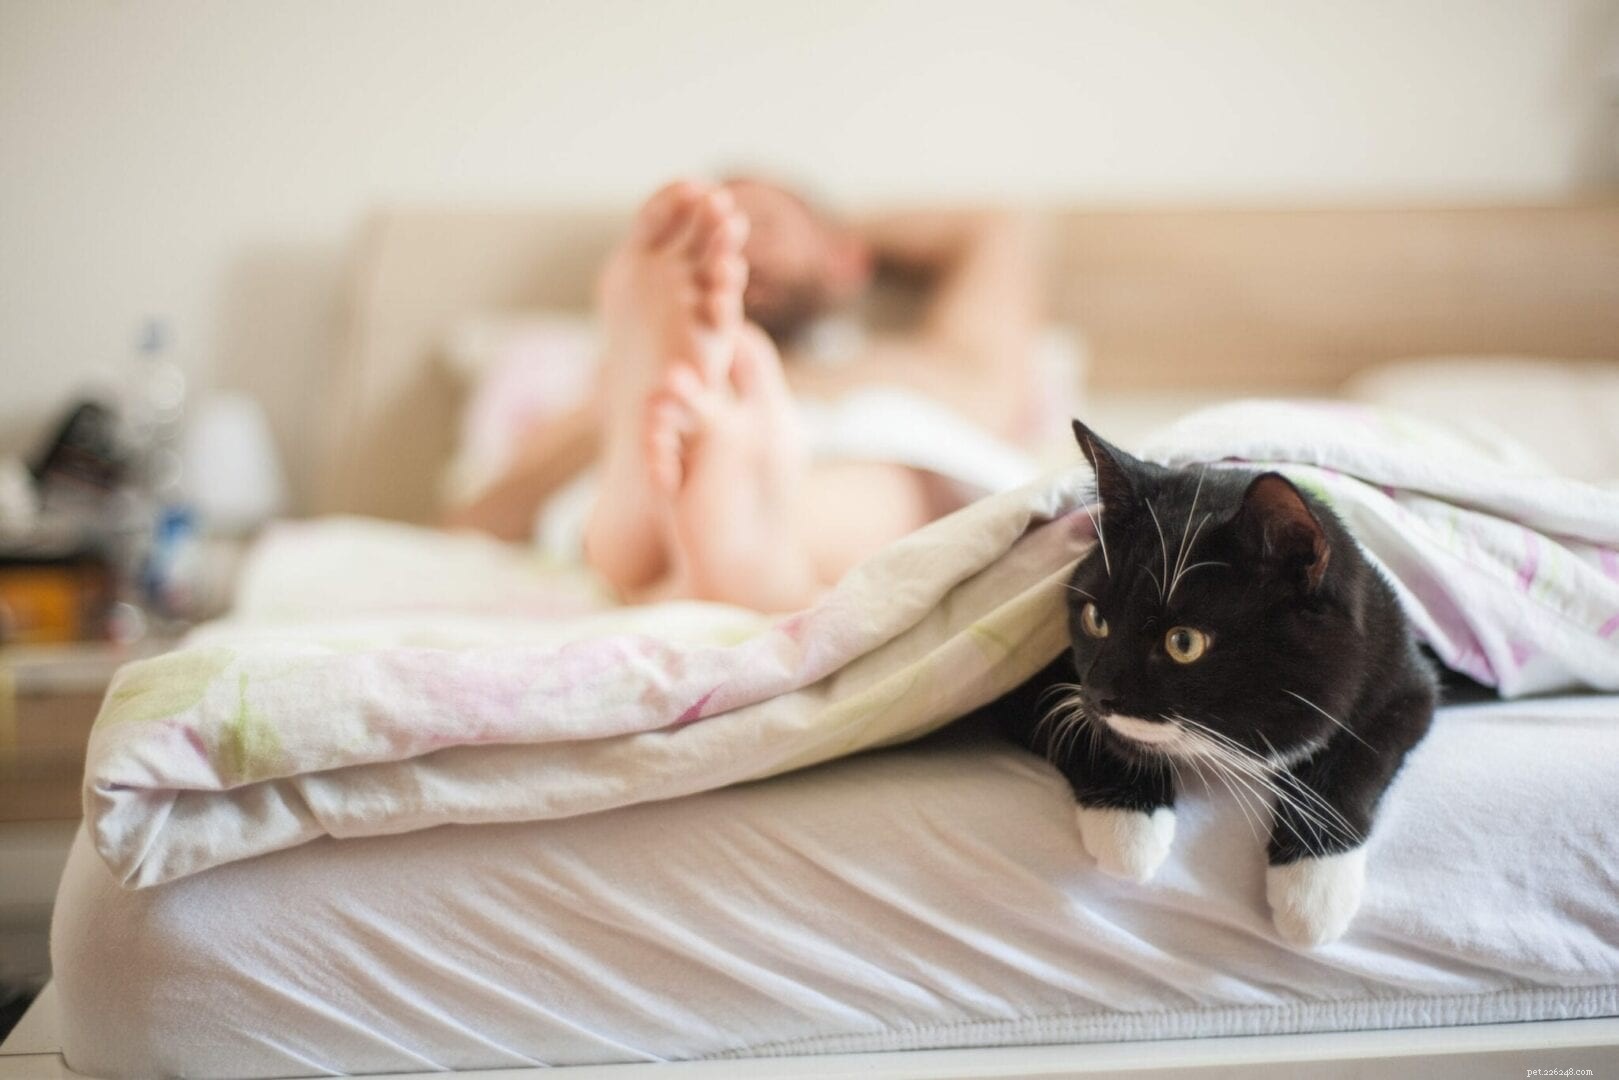 Perché i gatti amano attaccarti sotto le coperte?